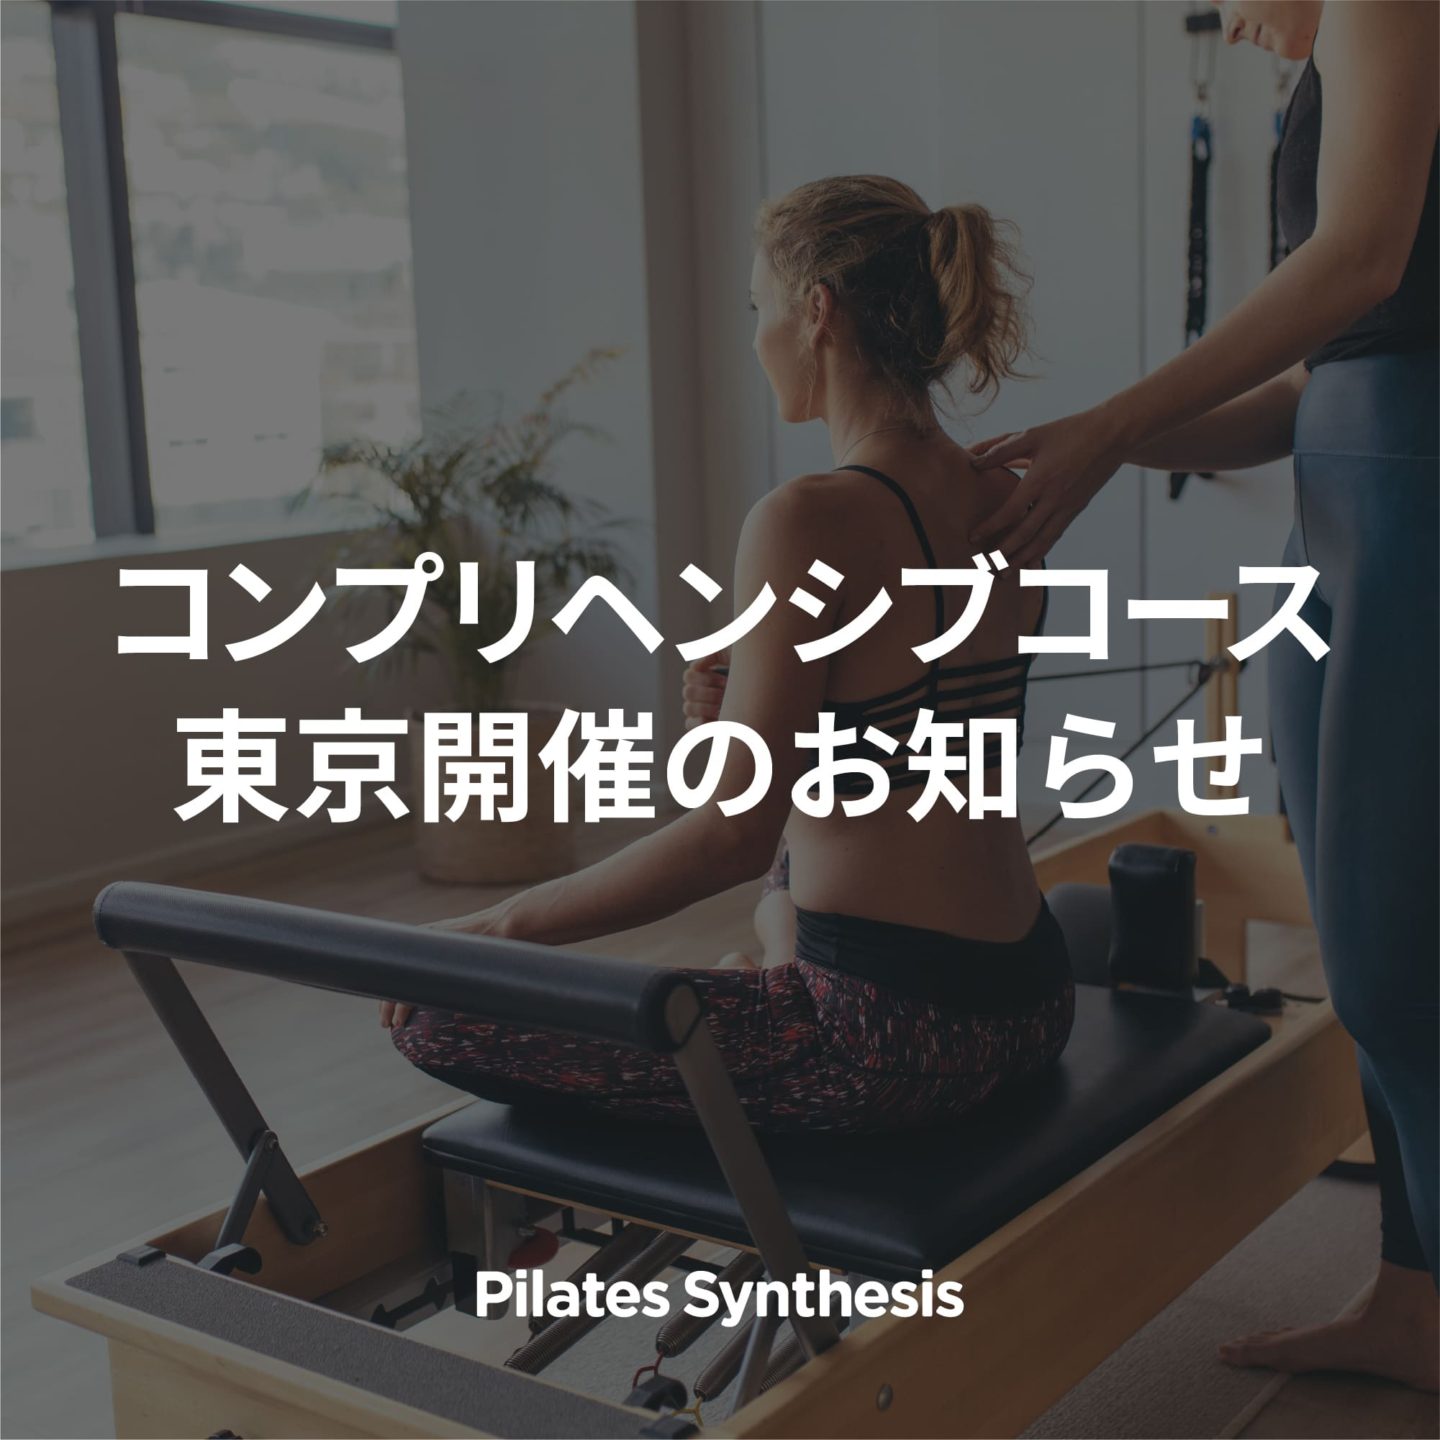 告知画像：【Pilates Synthesis】2022年度コンプリヘンシブコース東京開催のお知らせ